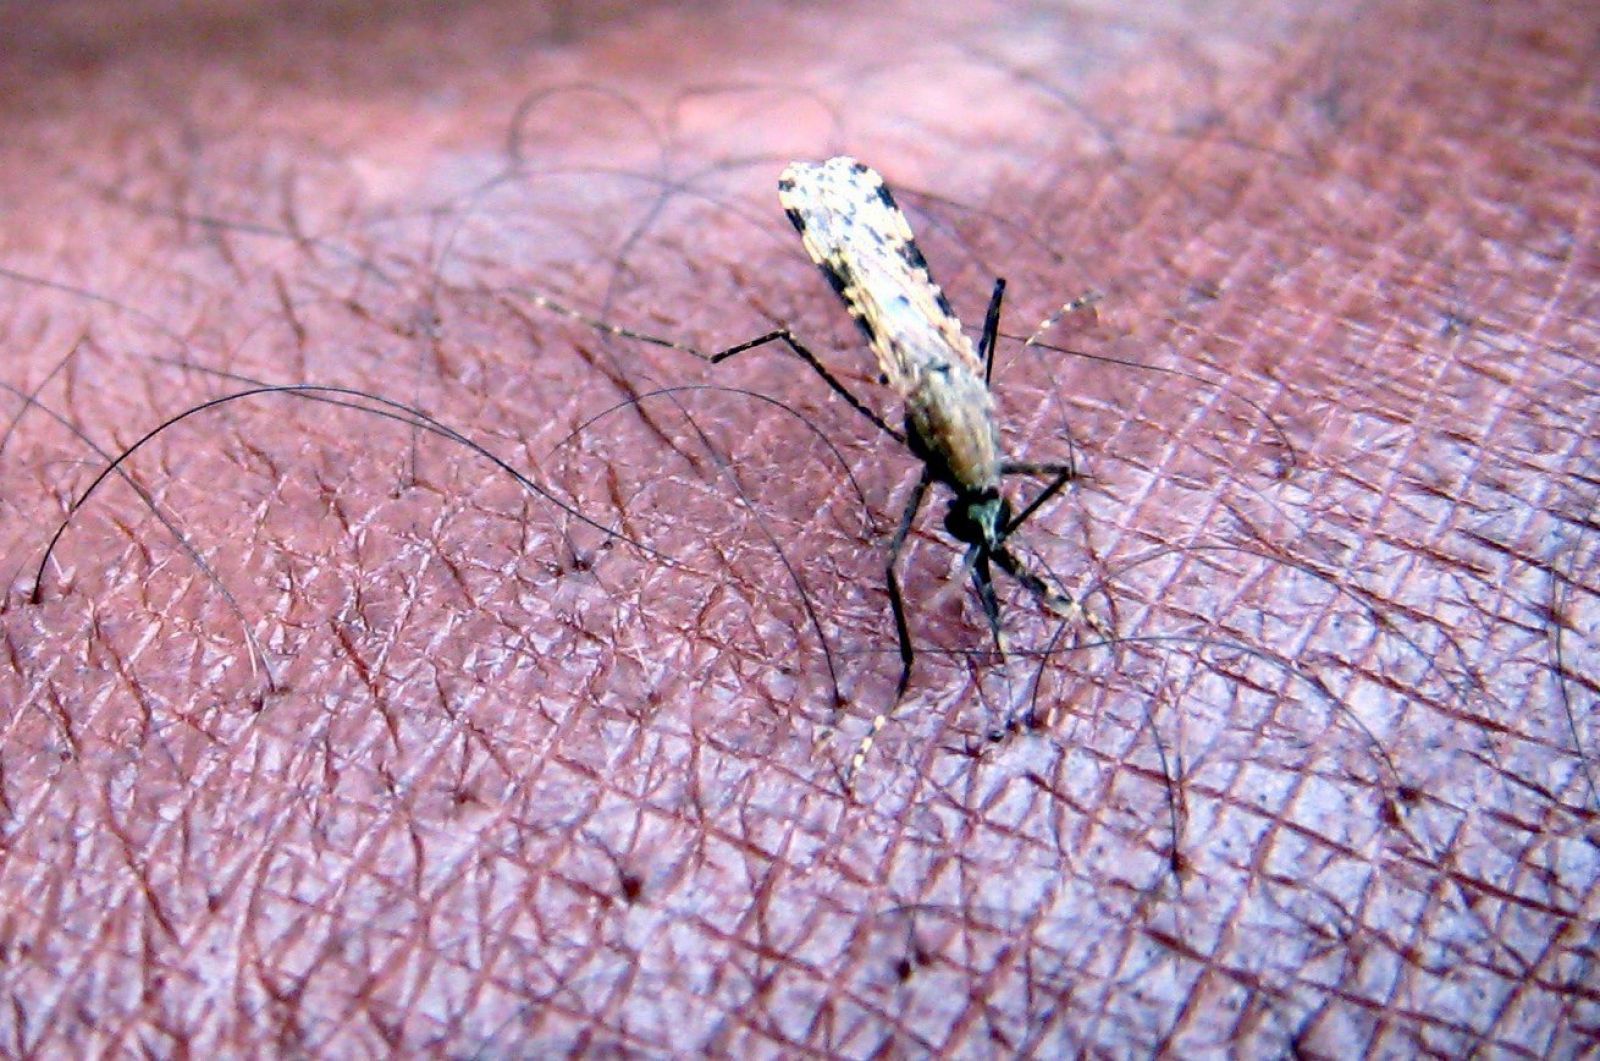 Mosquito de la especie 'Anopheles gambiae', principal transmisor de la malaria en África